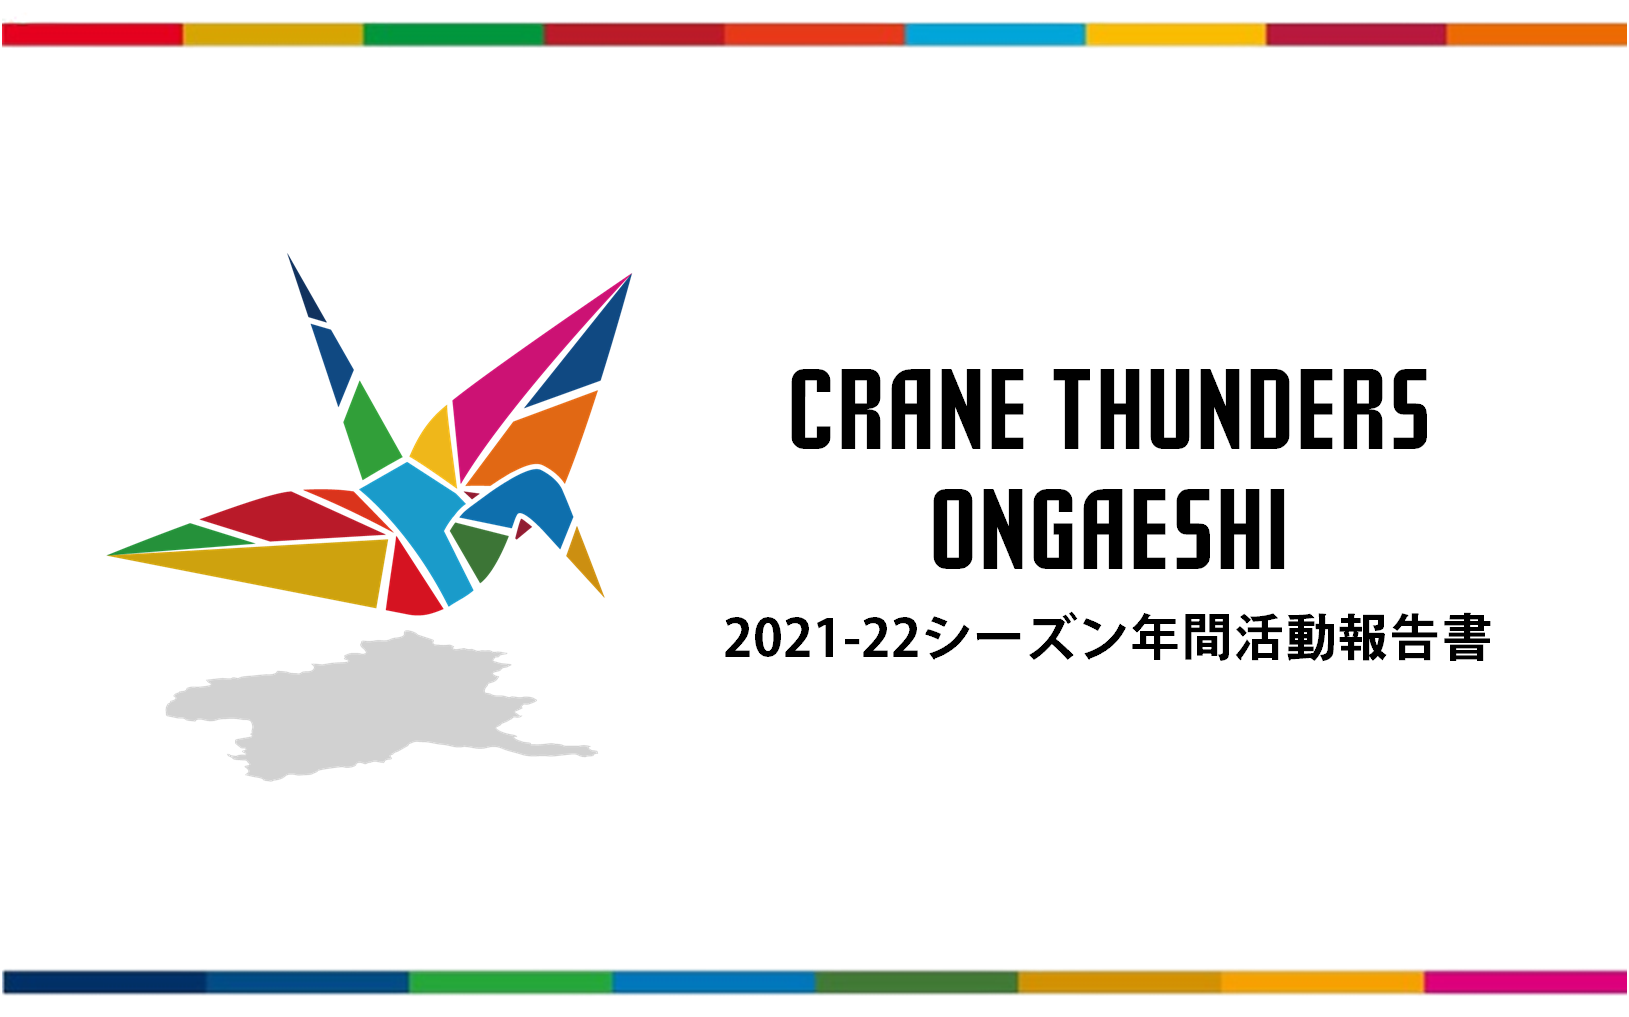 2021-22シーズン CRANE THUNDERS ONGAESHI活動報告の公開